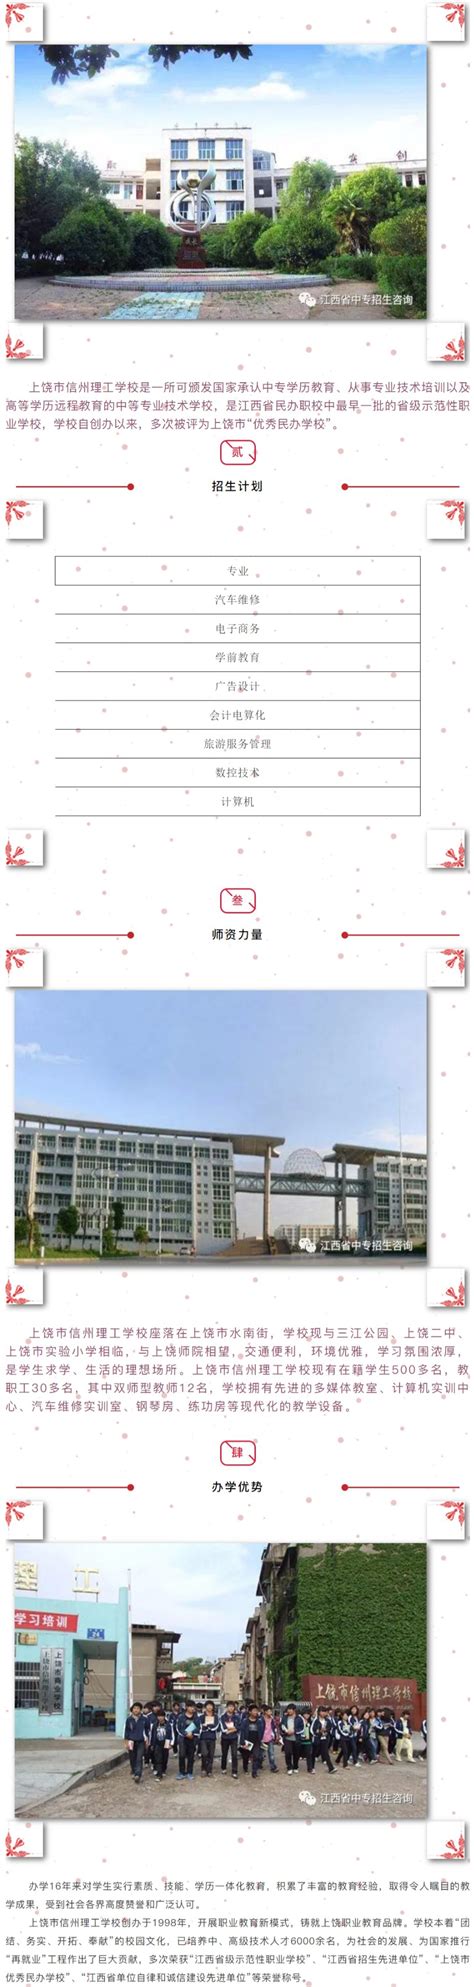 上饶市信州理工学校2020年招生简章 - 职教网